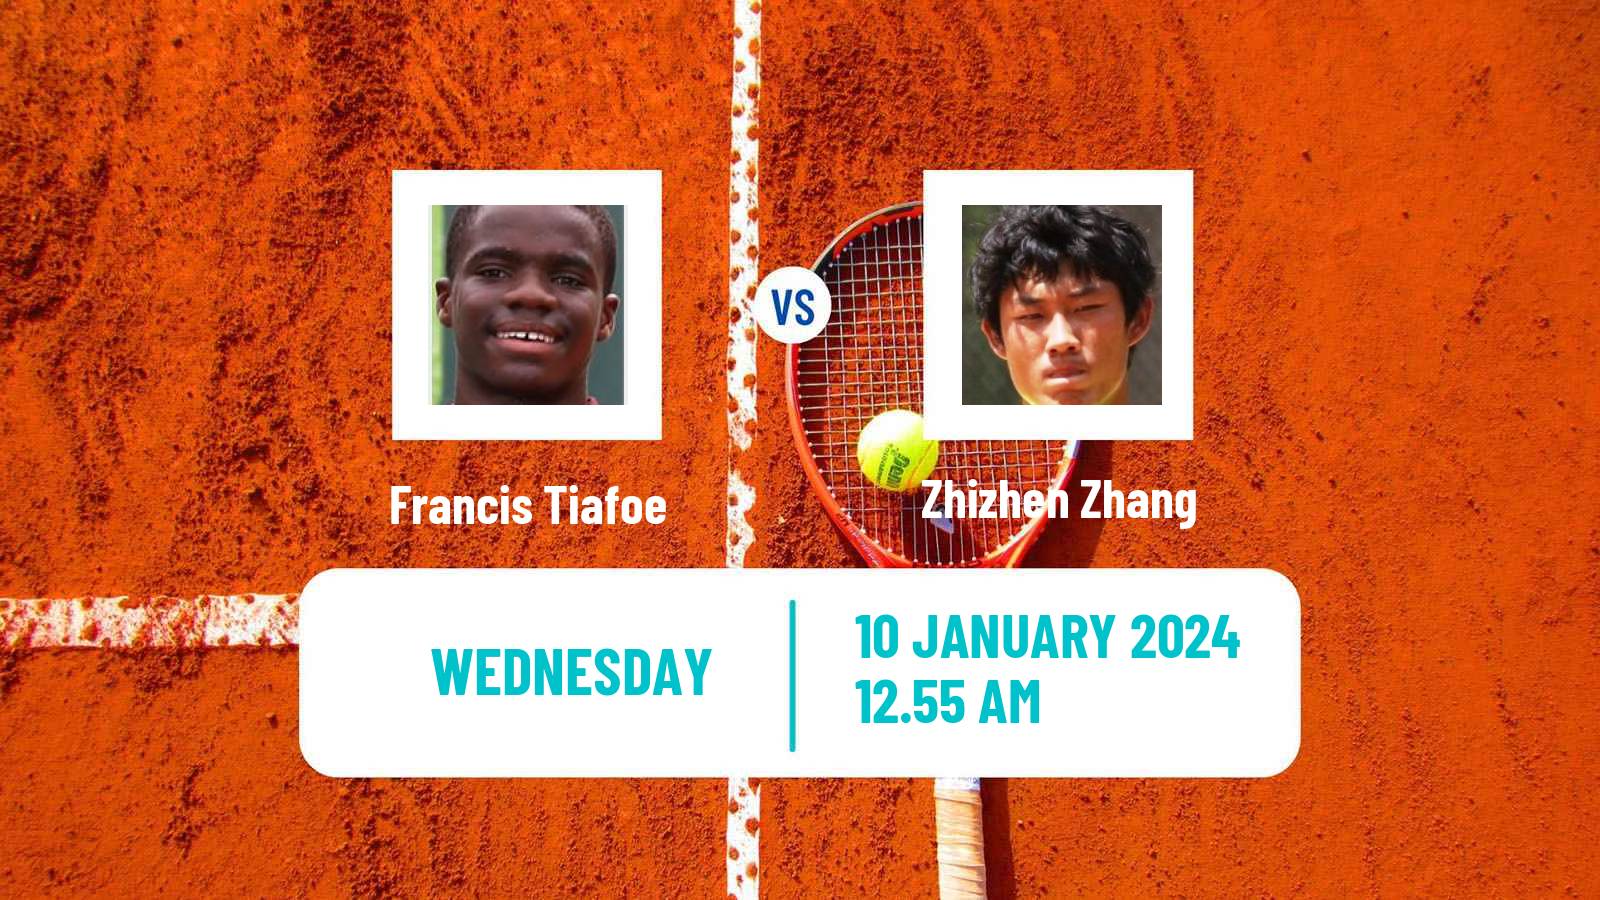 Tennis Exhibition Others Matches Tennis Men Francis Tiafoe - Zhizhen Zhang